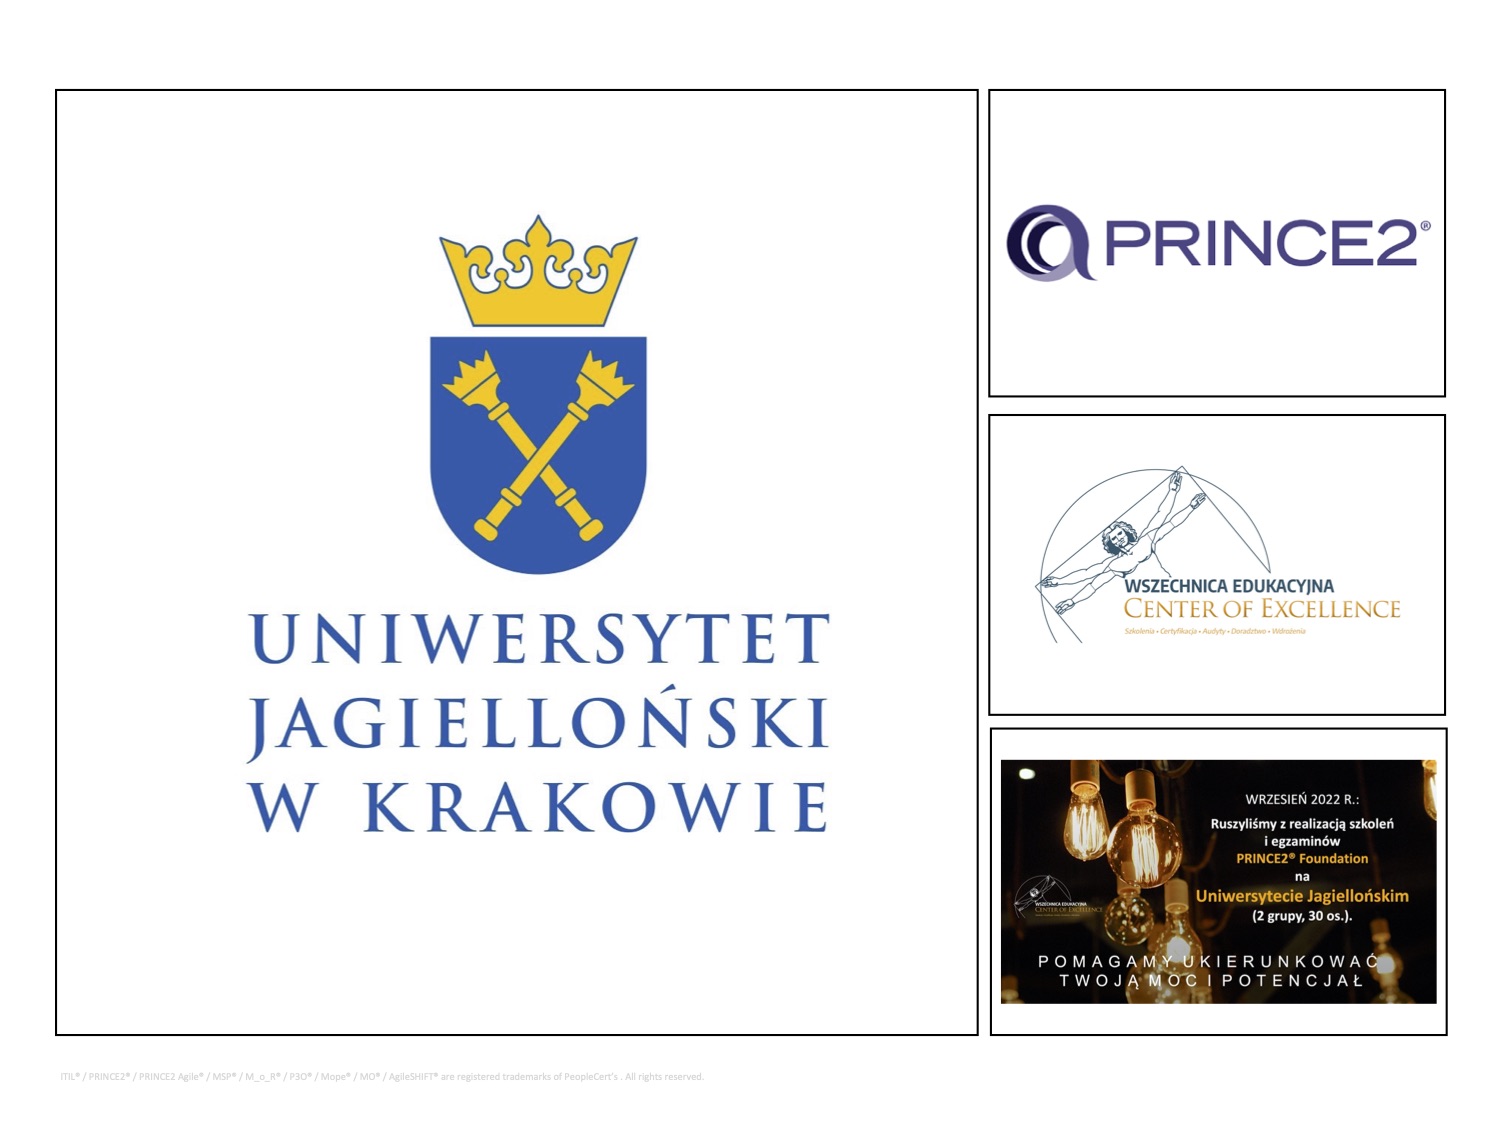 Uniwersytet Jagielloński - PRINCE2 - Wszechnnica Edukacyjna.jpg